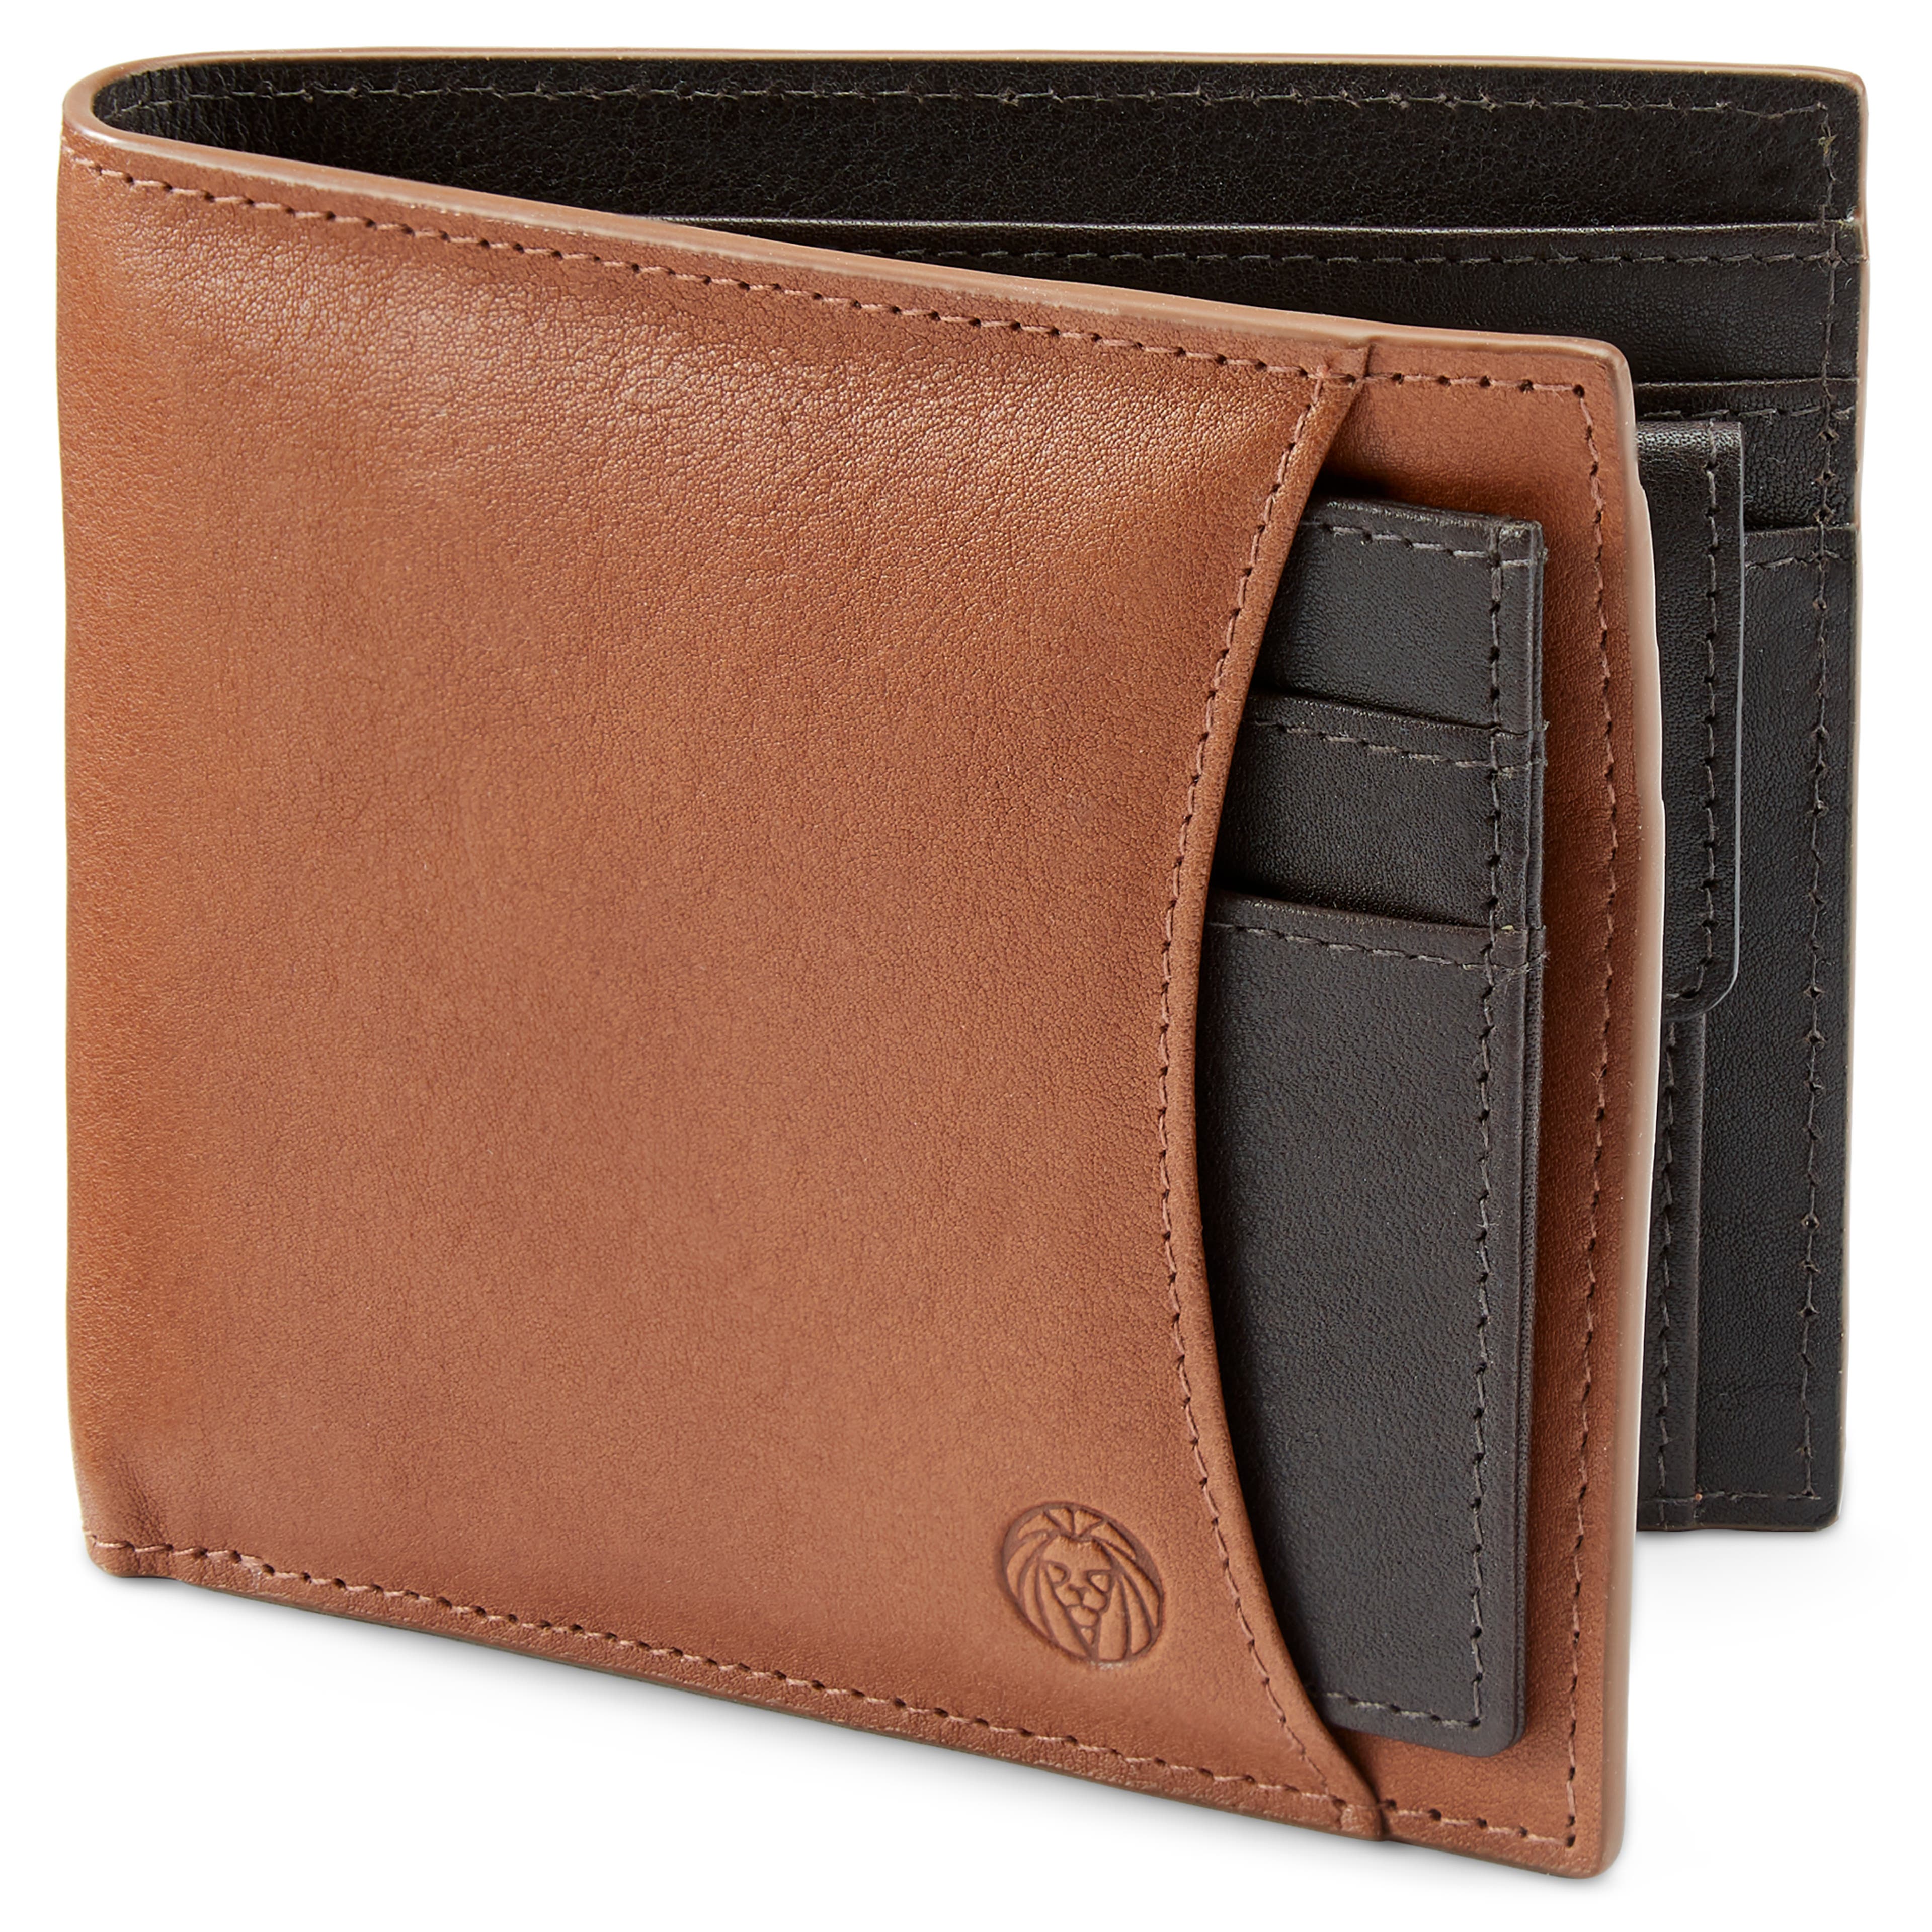 Portefeuille avec porte-cartes en cuir brun et brun foncé anti-RFID par Lincoln